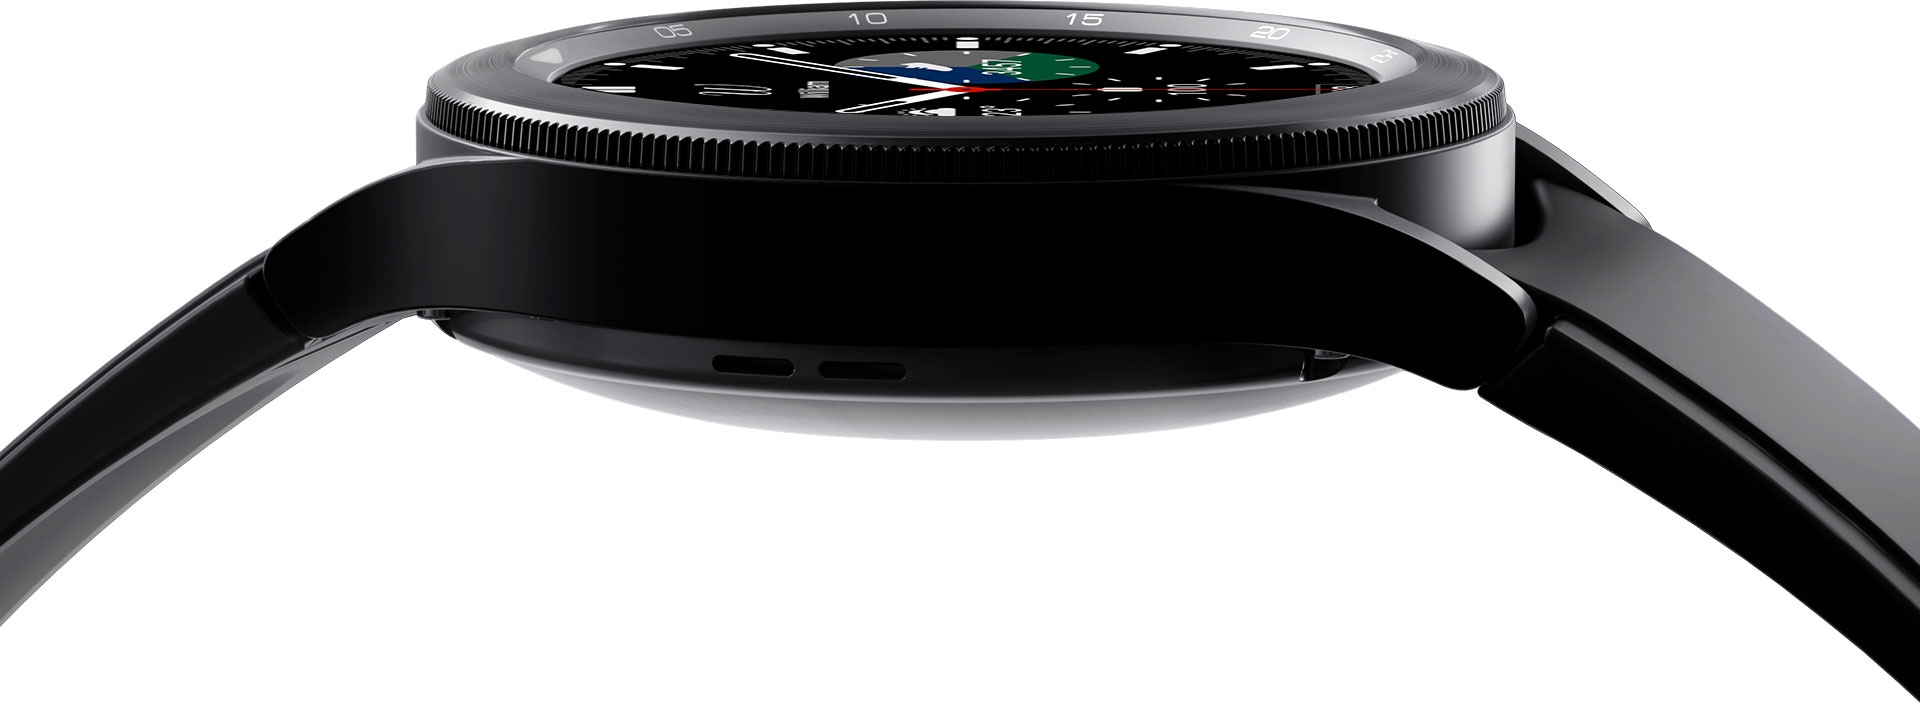 يُعرض تصميم ساعة Galaxy Watch4 Classic في لقطة مقربة، مع التركيز على تفاصيل حوافها.